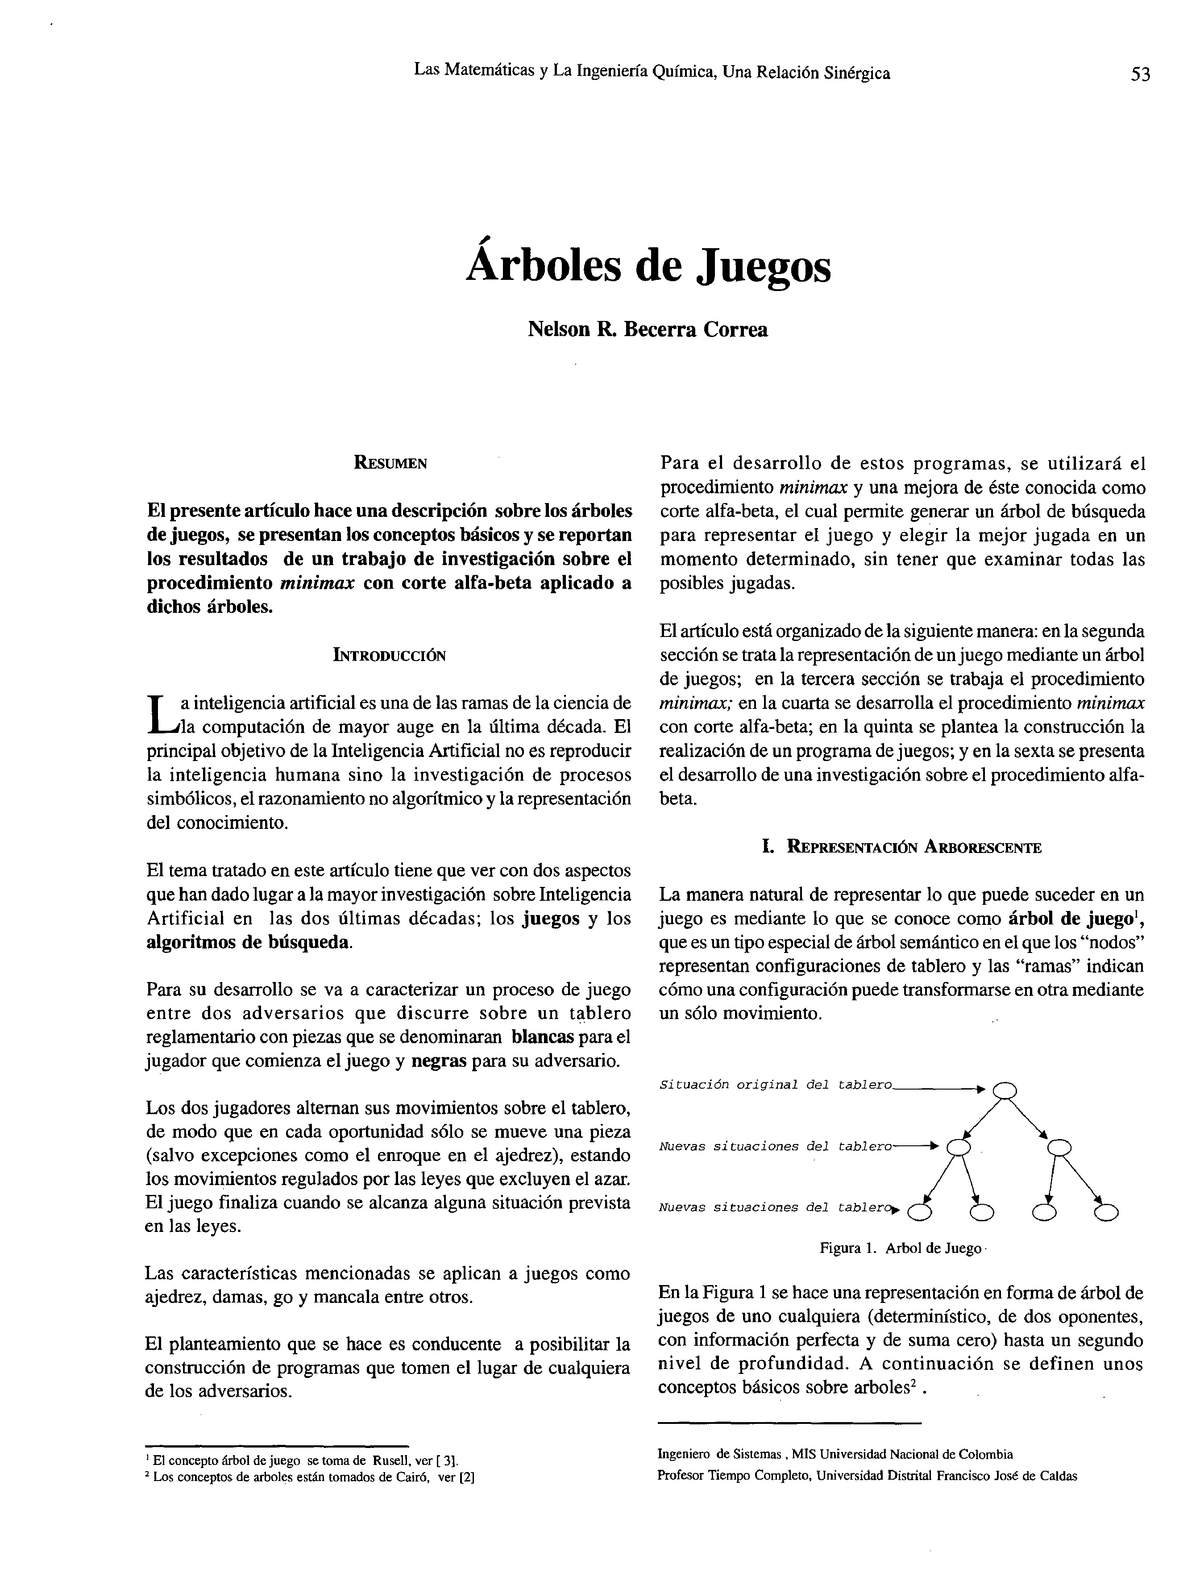 Dialnet Arboles De Juegos 4902779 Studocu